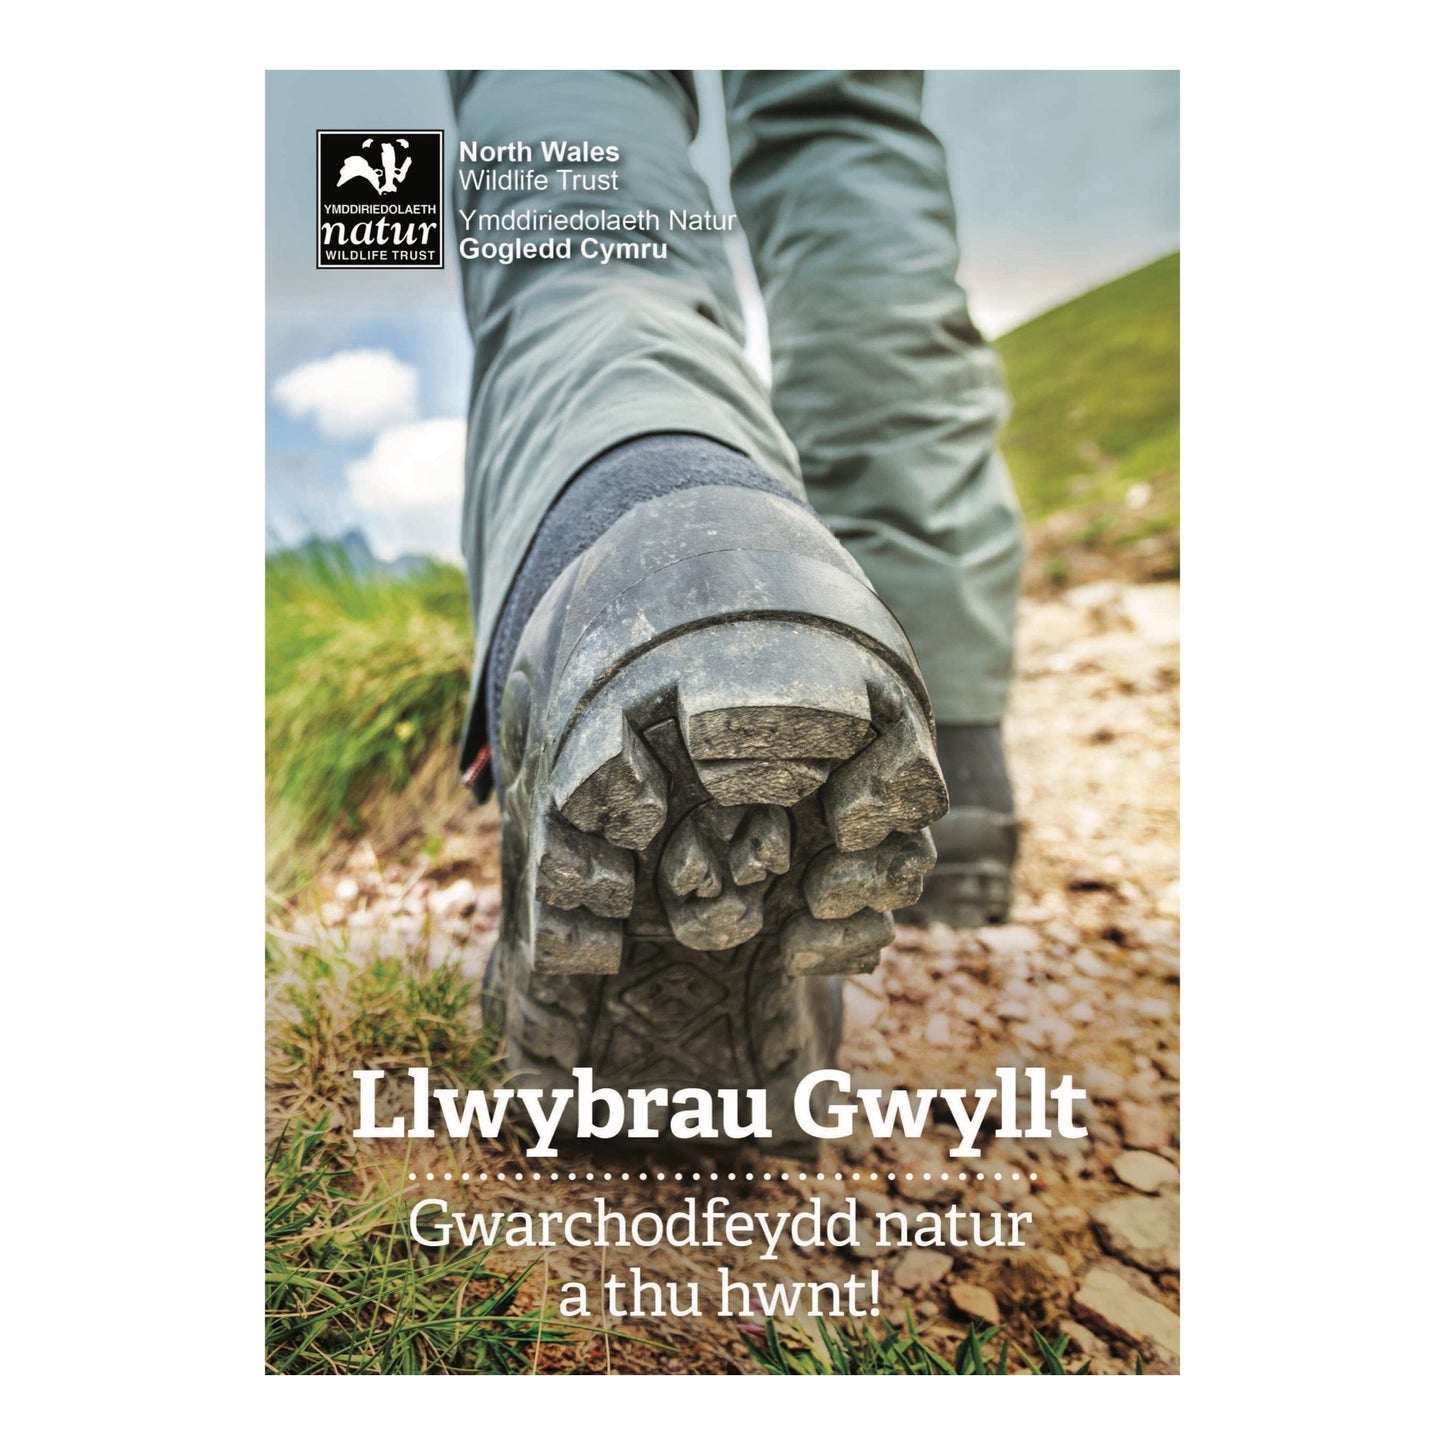 Wildlife Walks / Llwybrau Gwyllt (English or Welsh Version)